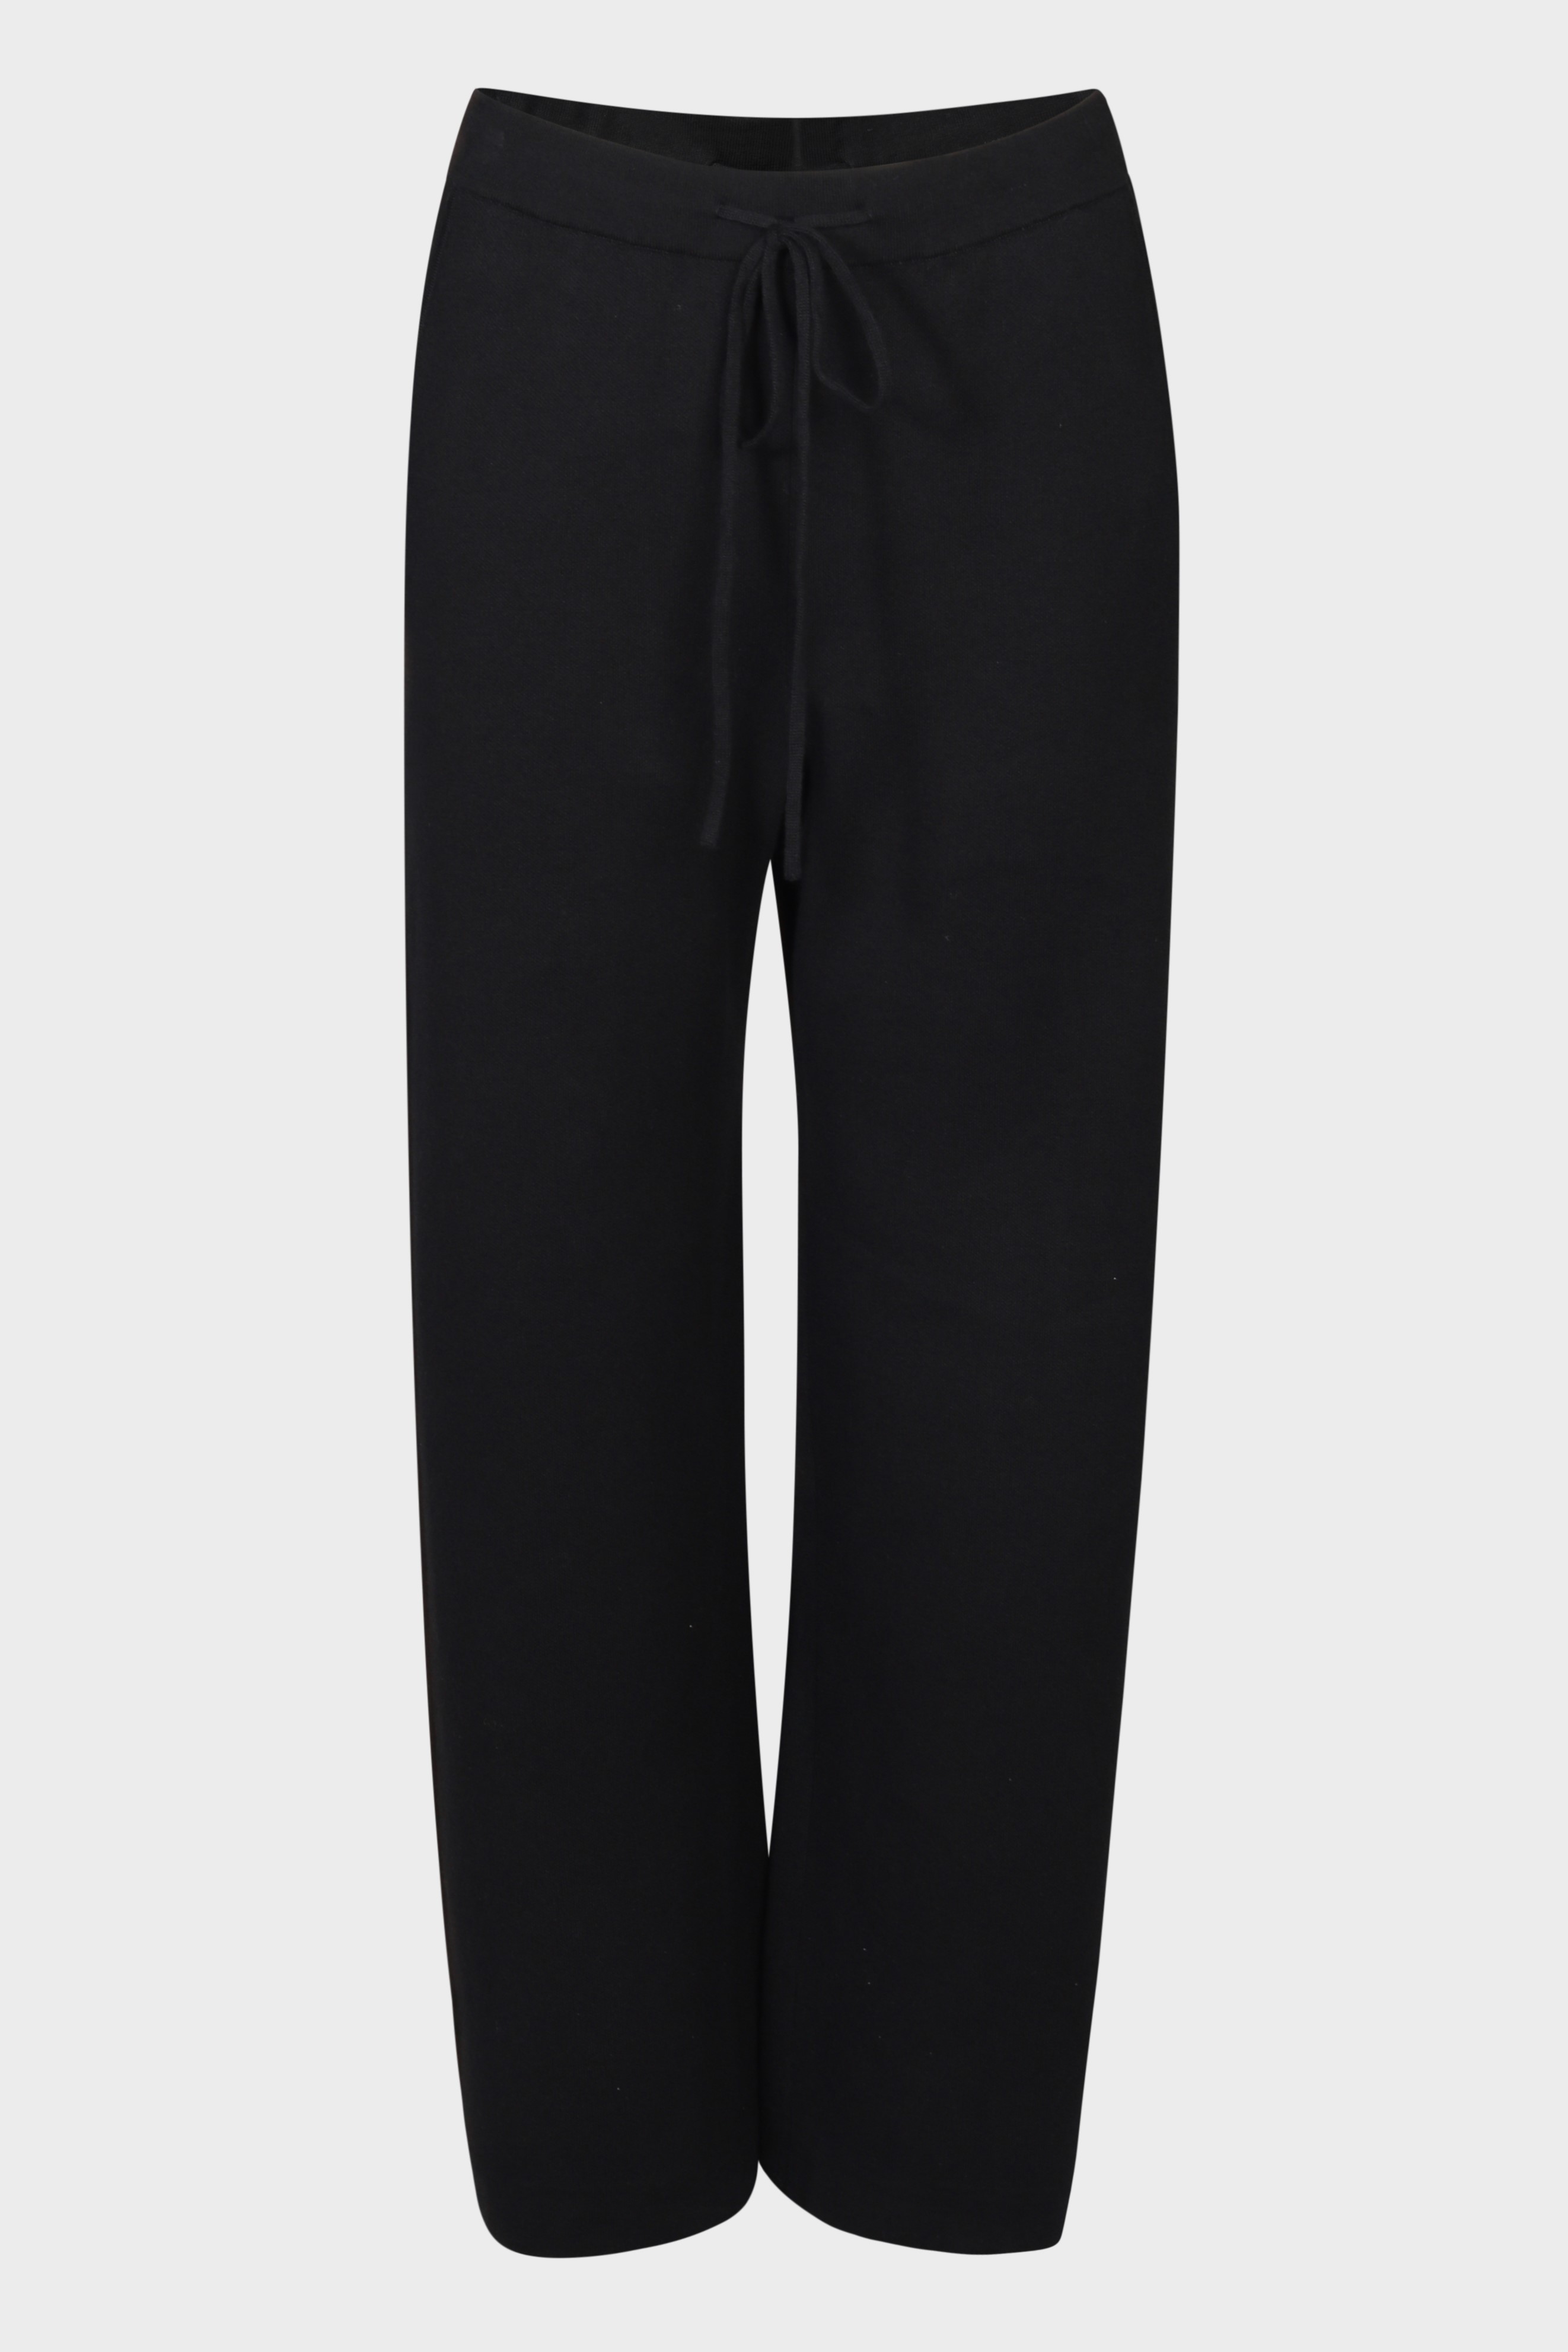 FLONA Cotton/ Cashmere Knit Pant in Black